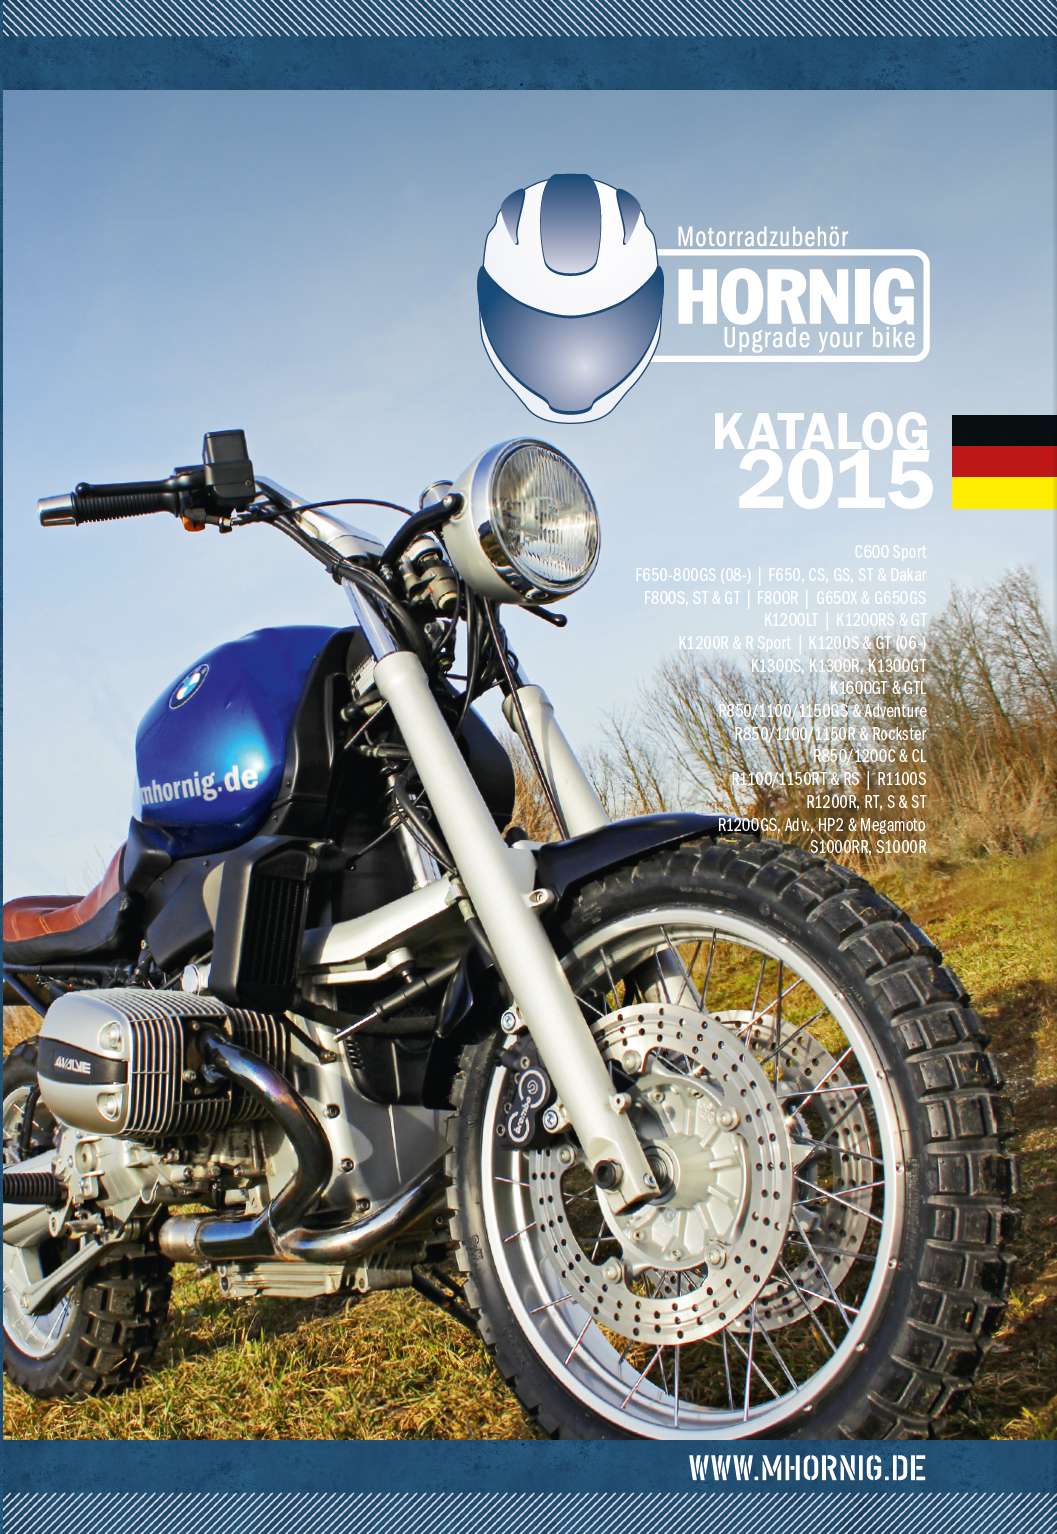 katalog-2015-de-1g BMW Motorradzubehör Katalog 2015 von Hornig  - jetzt downloaden oder kostenlos vorbestellen!